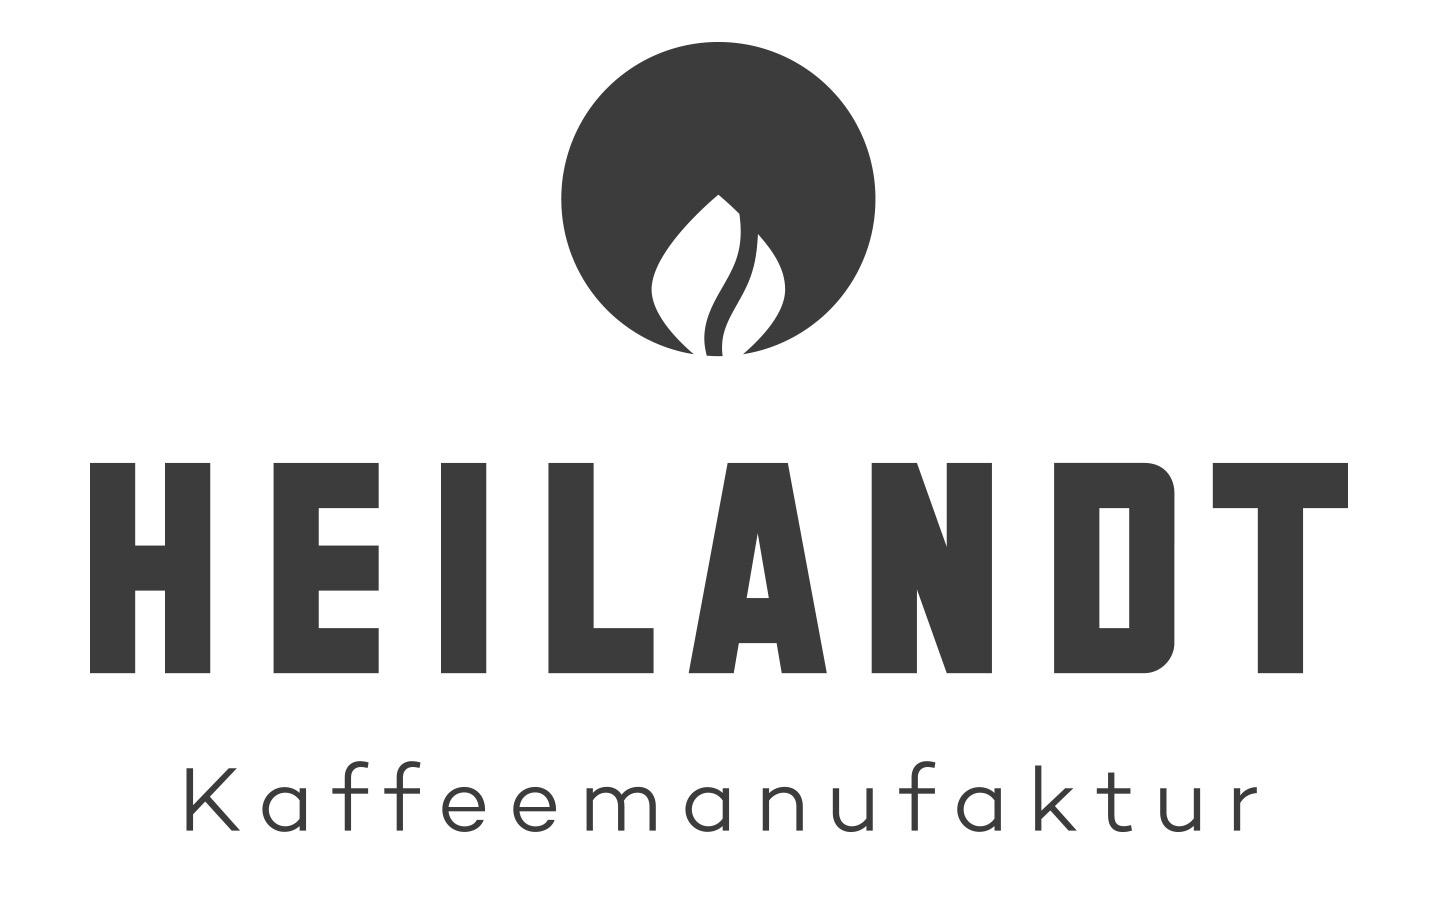 HEILANDT Kaffemanufaktur